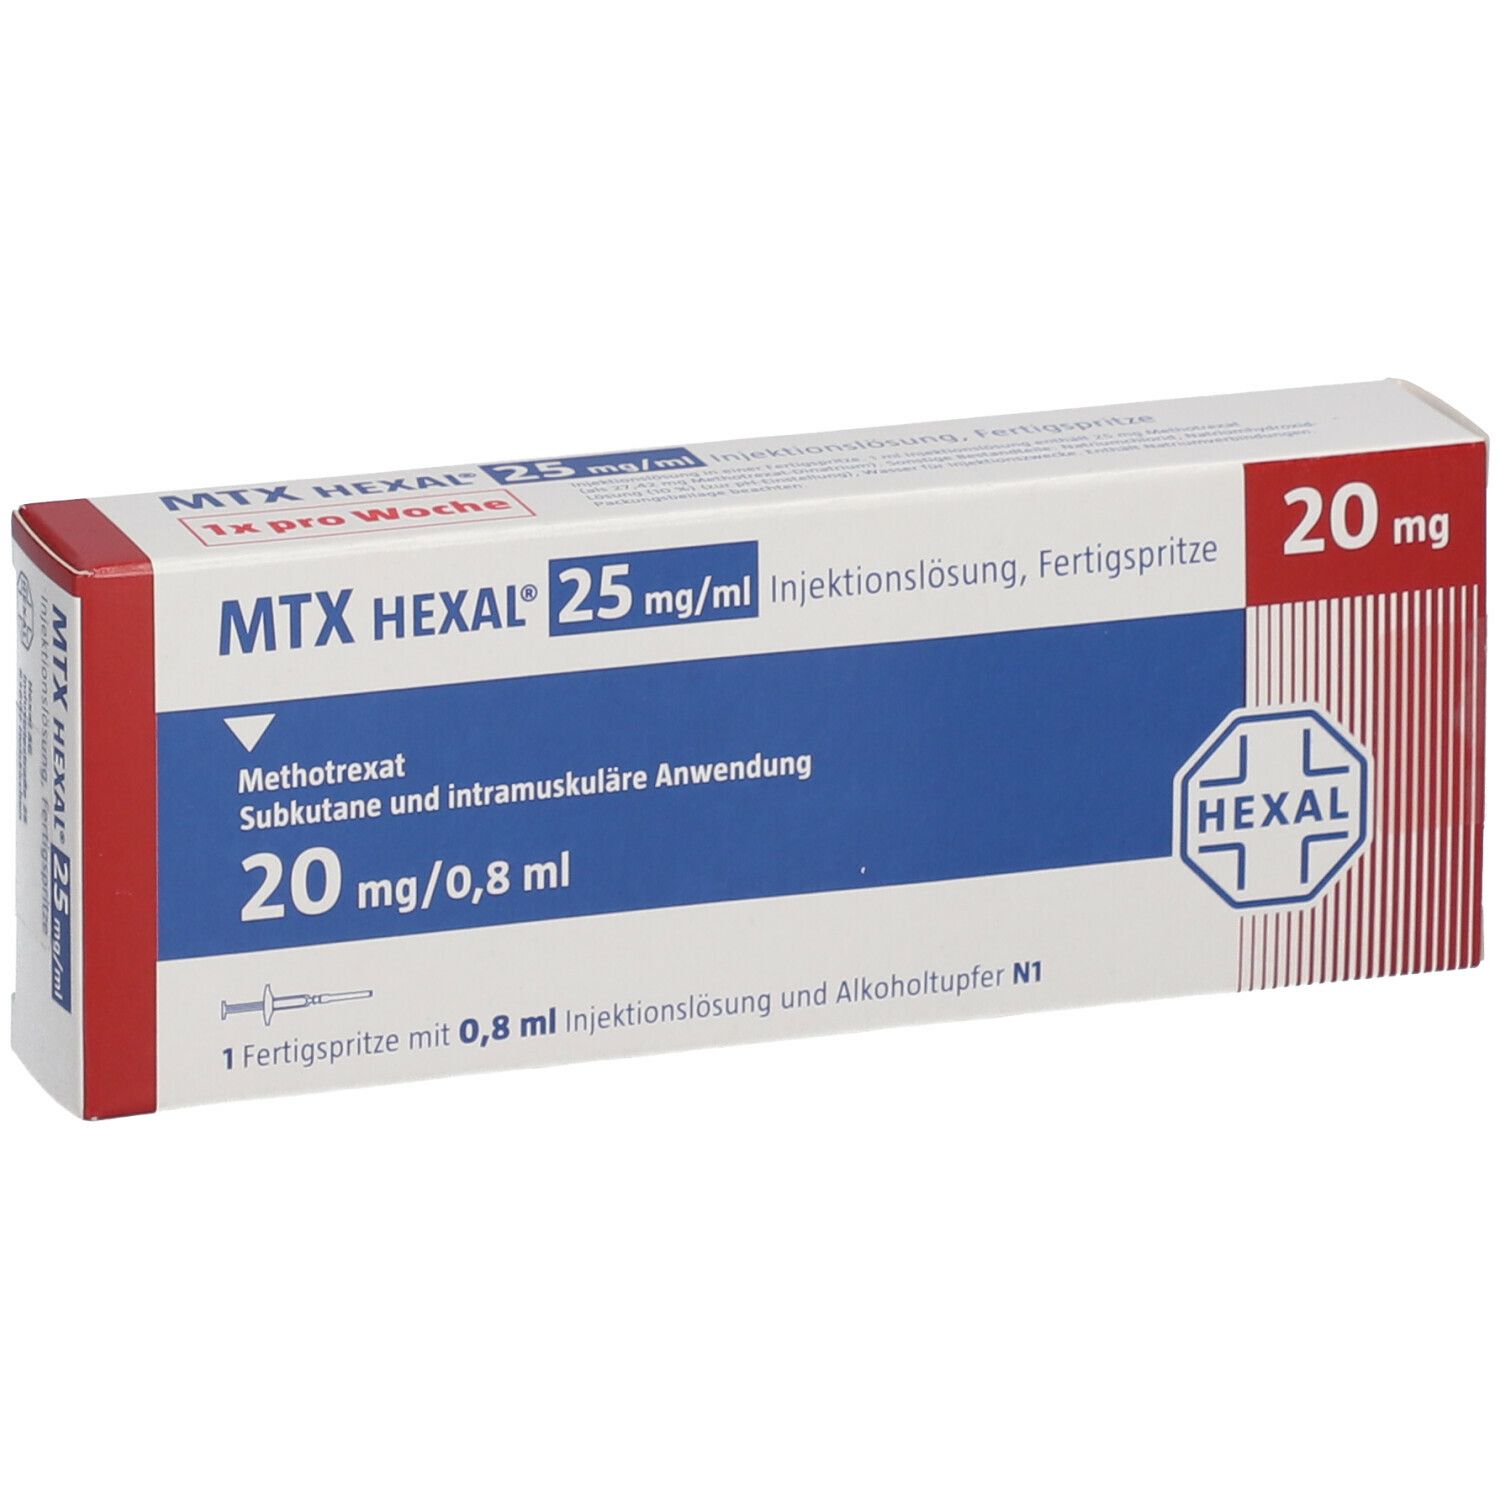 MTX HEXAL® 25 mg/ml 20 mg